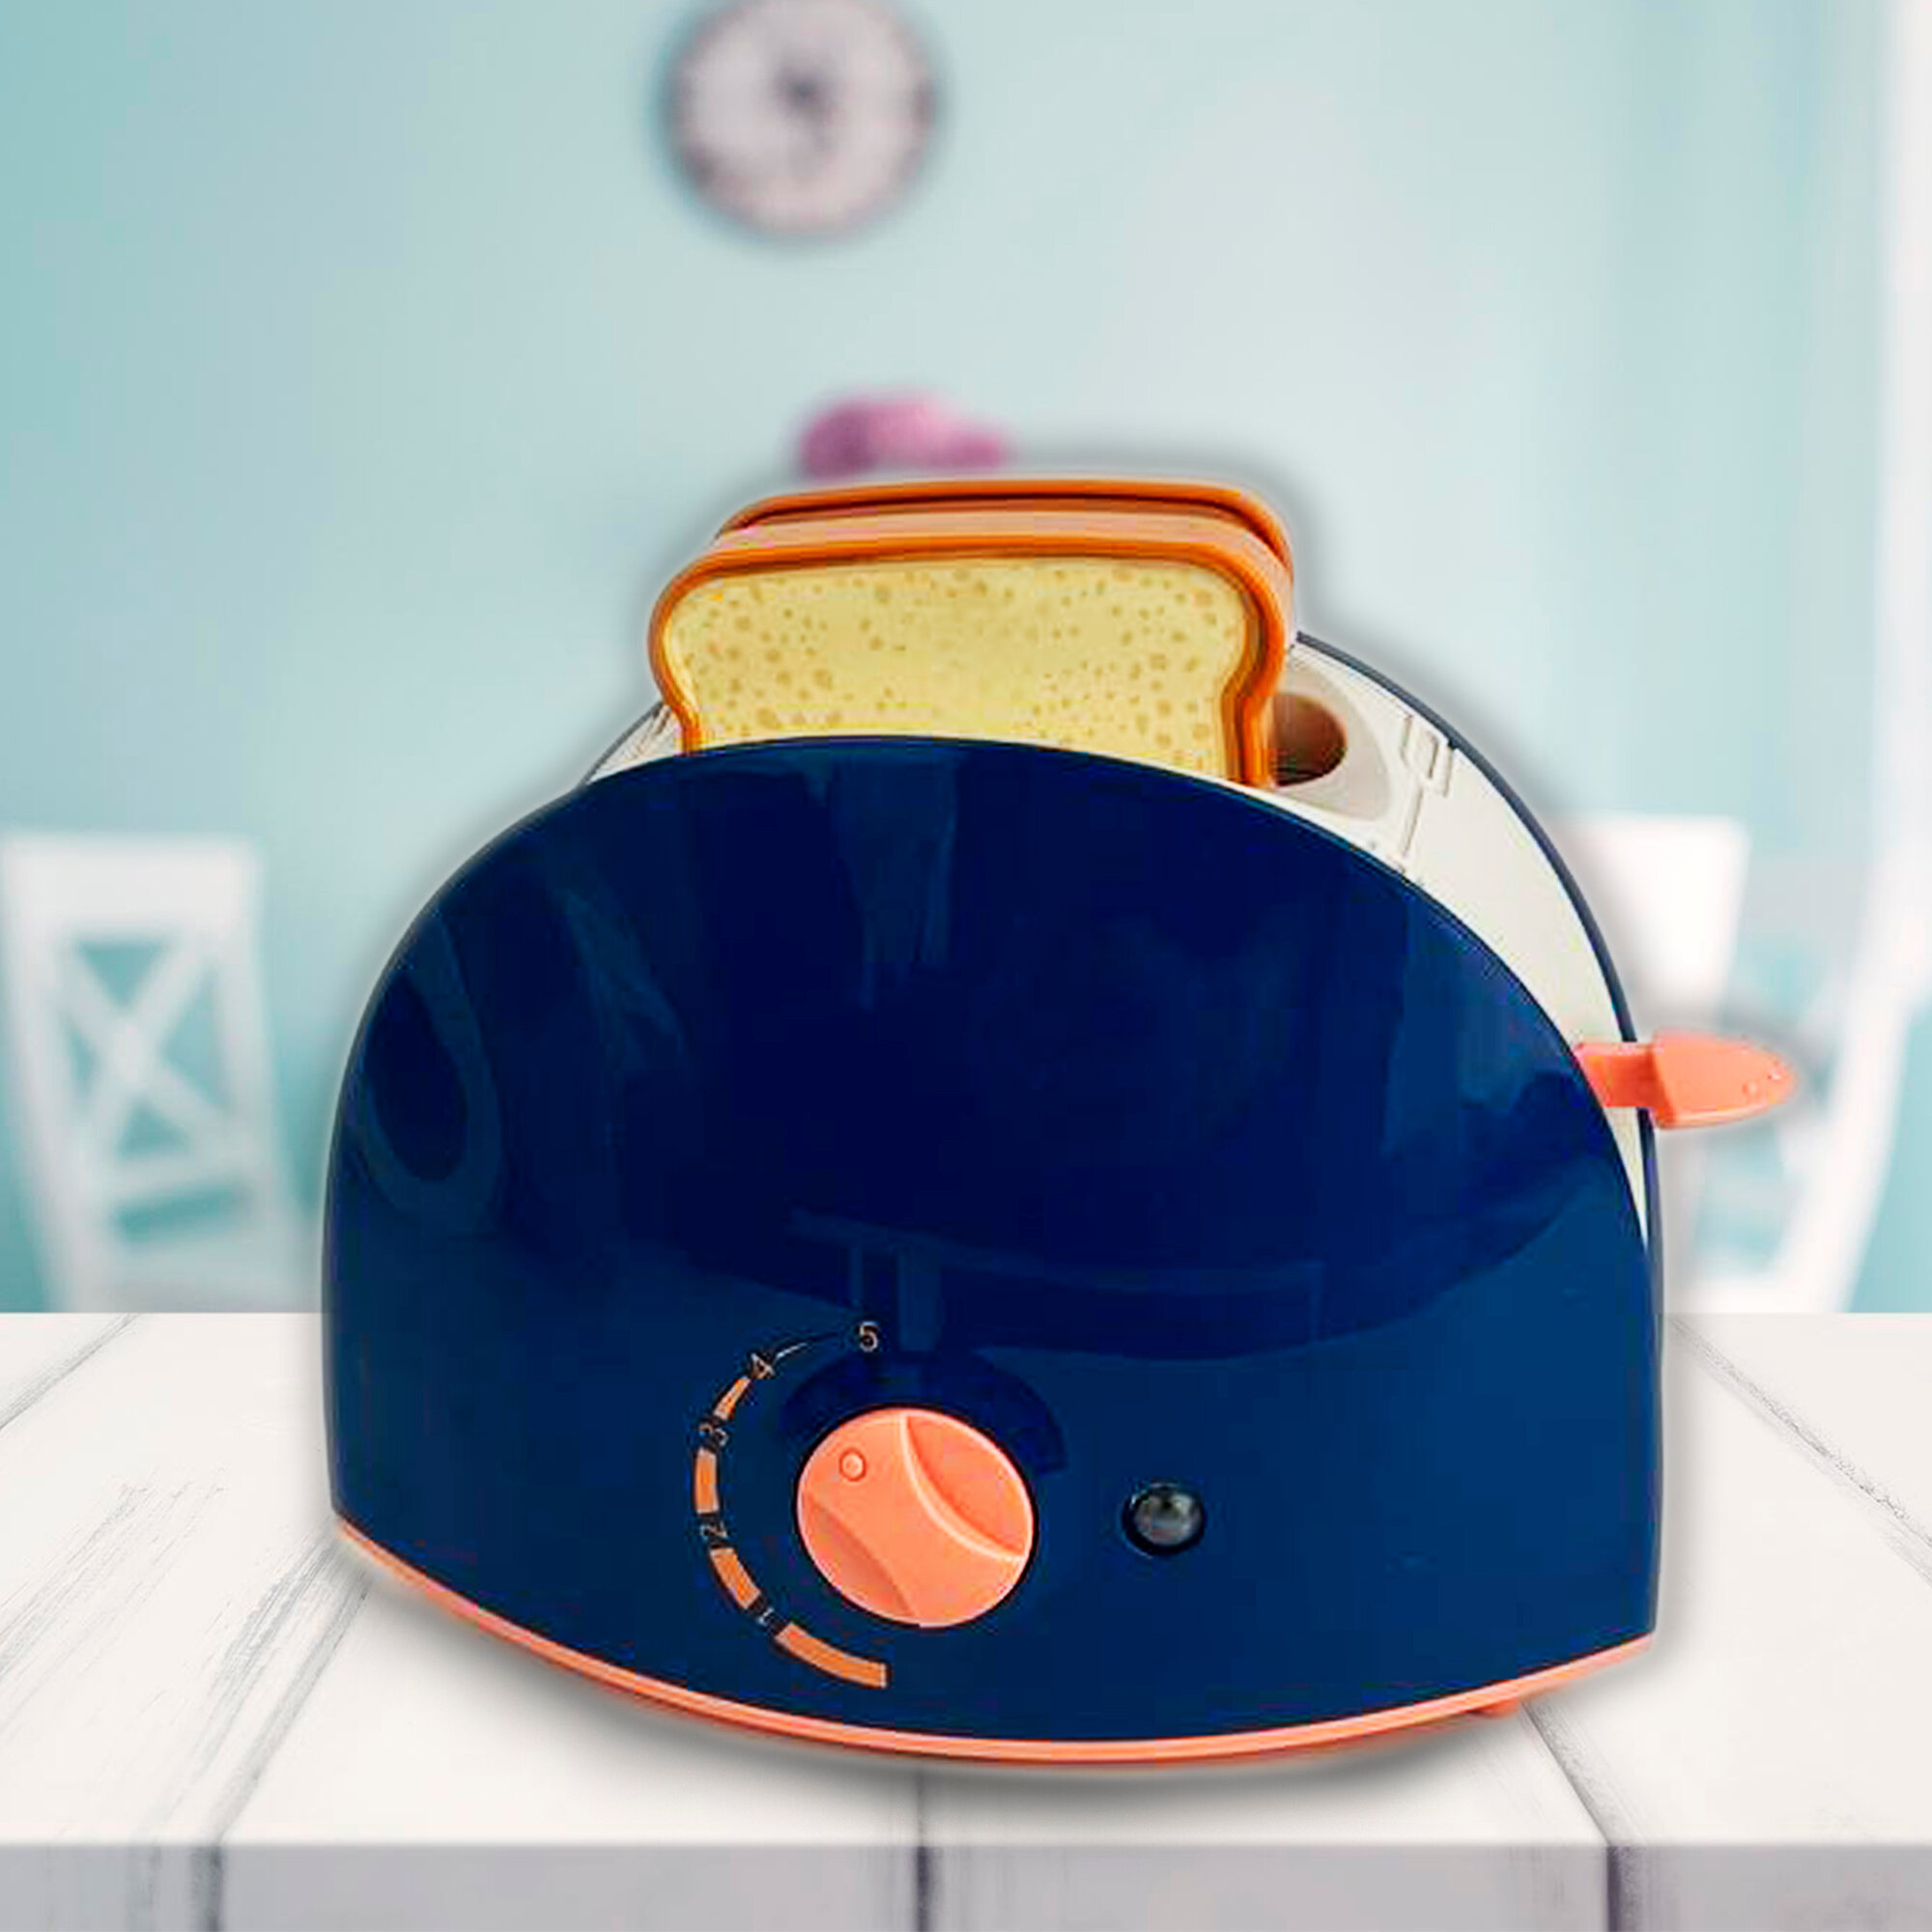 Игровой набор Тостер с аксессуарами для завтрака для детей плешоп детская посуда игрушечная со звуковыми и световыми эффектами на батарейках